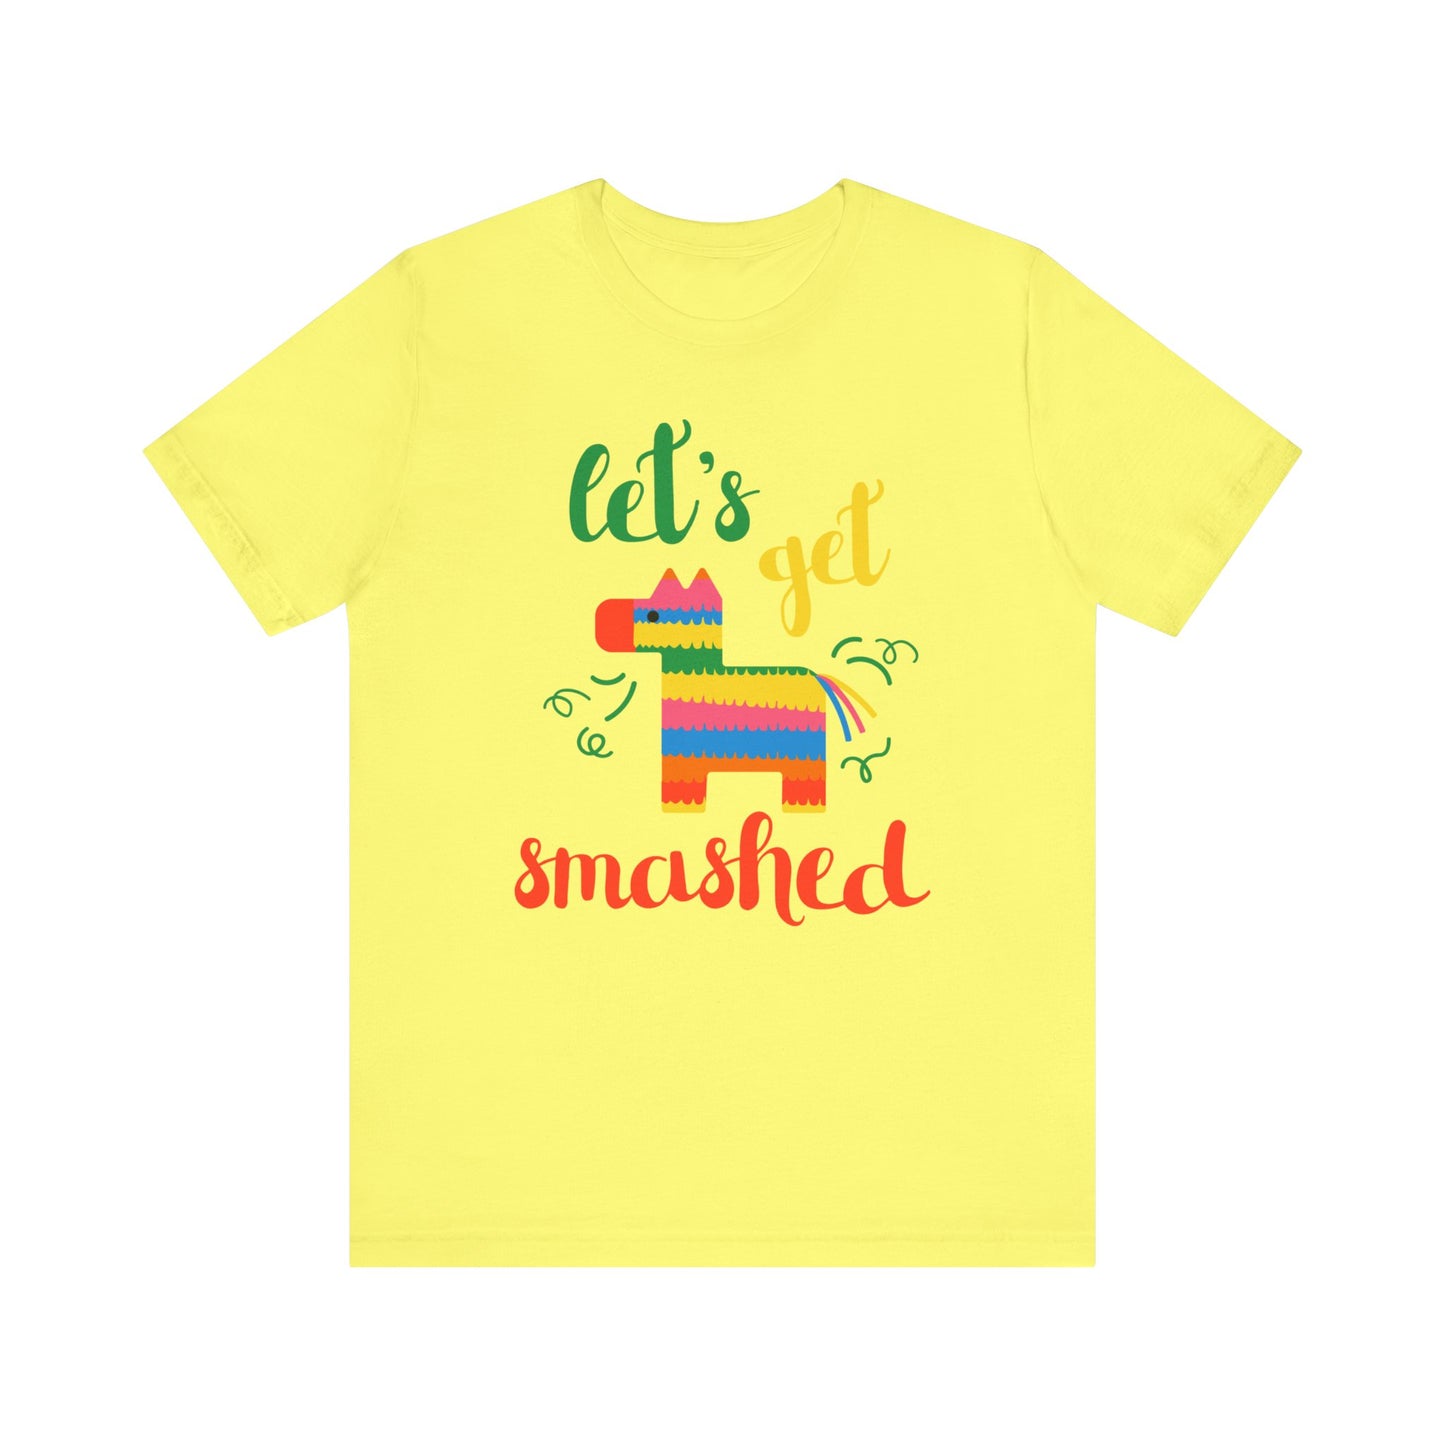 Let's Get Smashed - Men's T-shirt